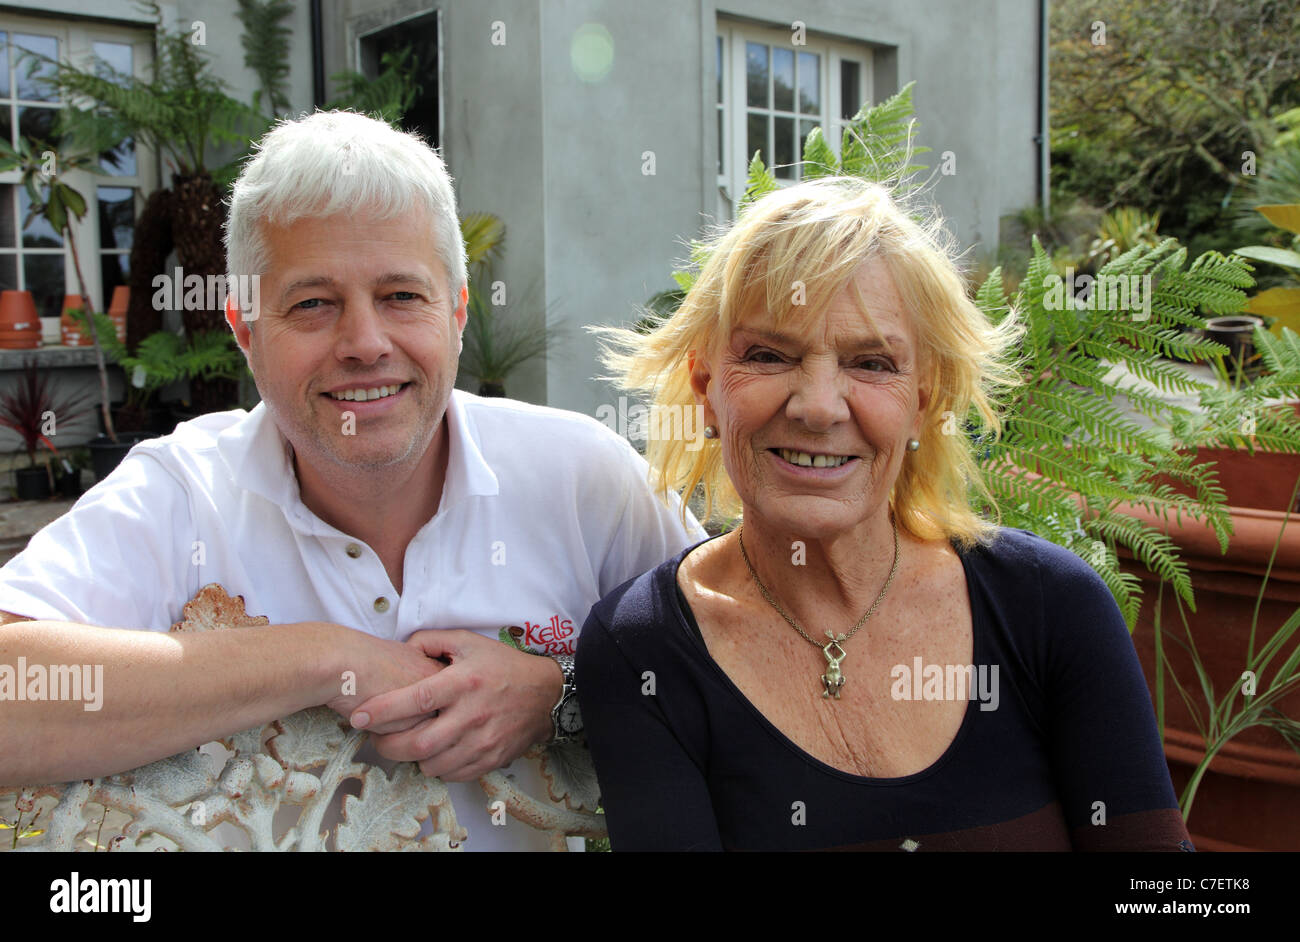 Billy Alexander, Besitzer von Kells Bay Gardens mit irischen Künstlers Pauline Bewick, Kells Bay Gardens, Co Kerry, Irland Stockfoto